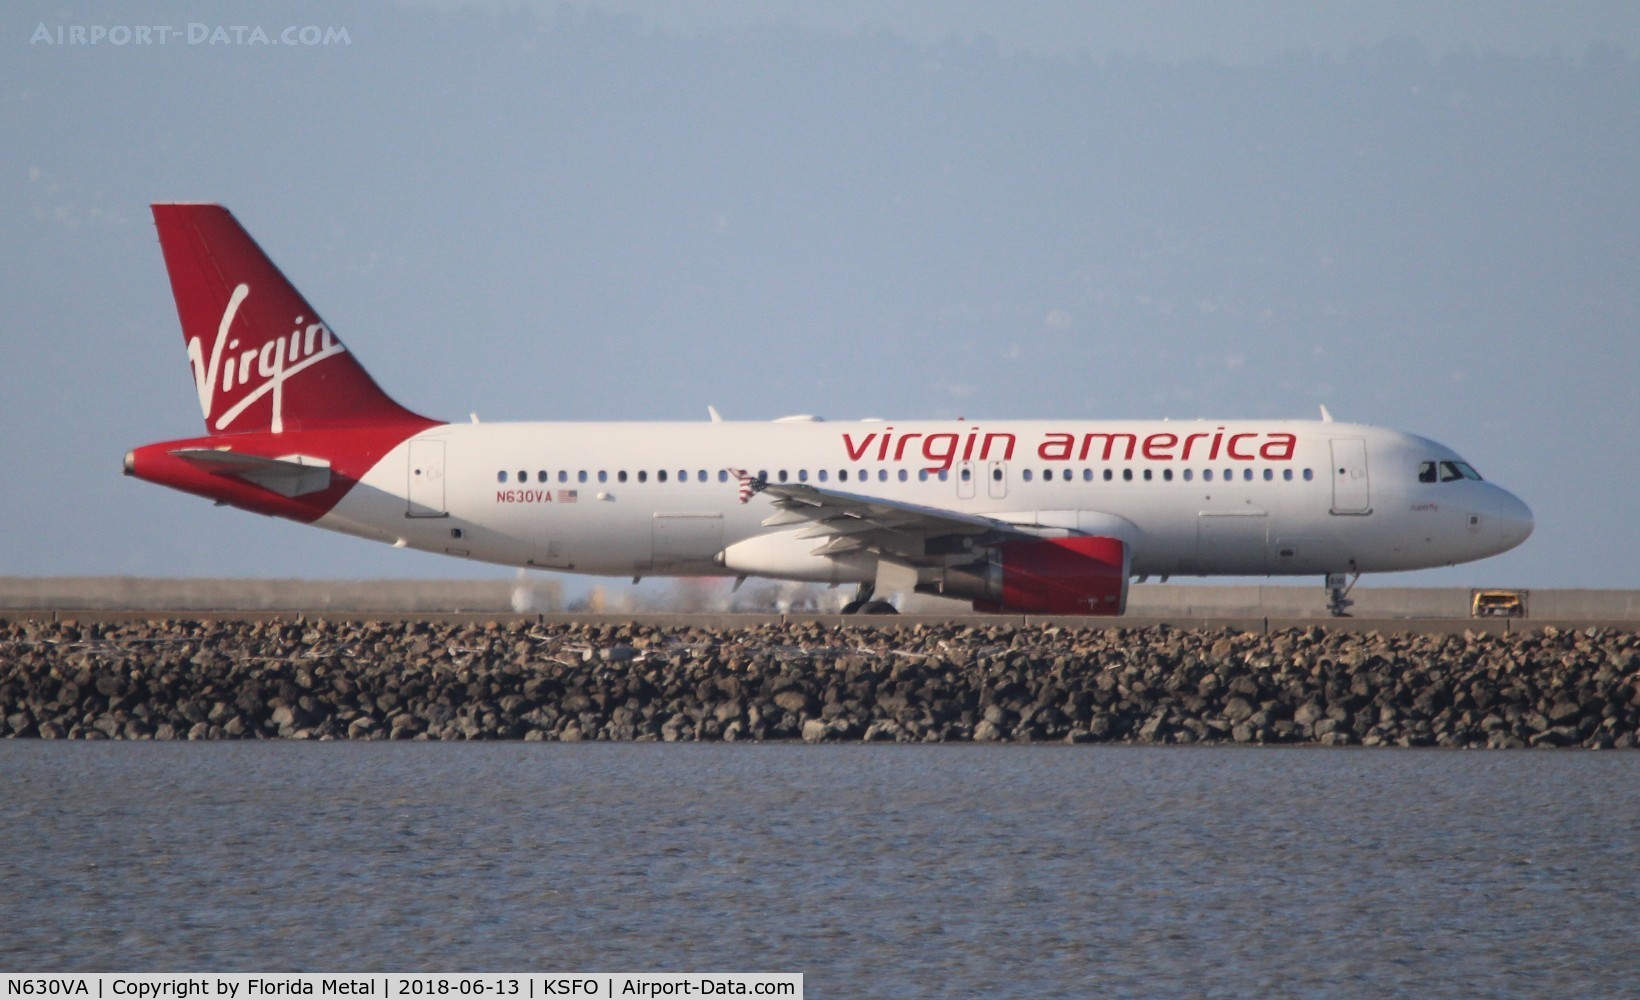 N630VA, 2007 Airbus A320-214 C/N 3101, Virgin America